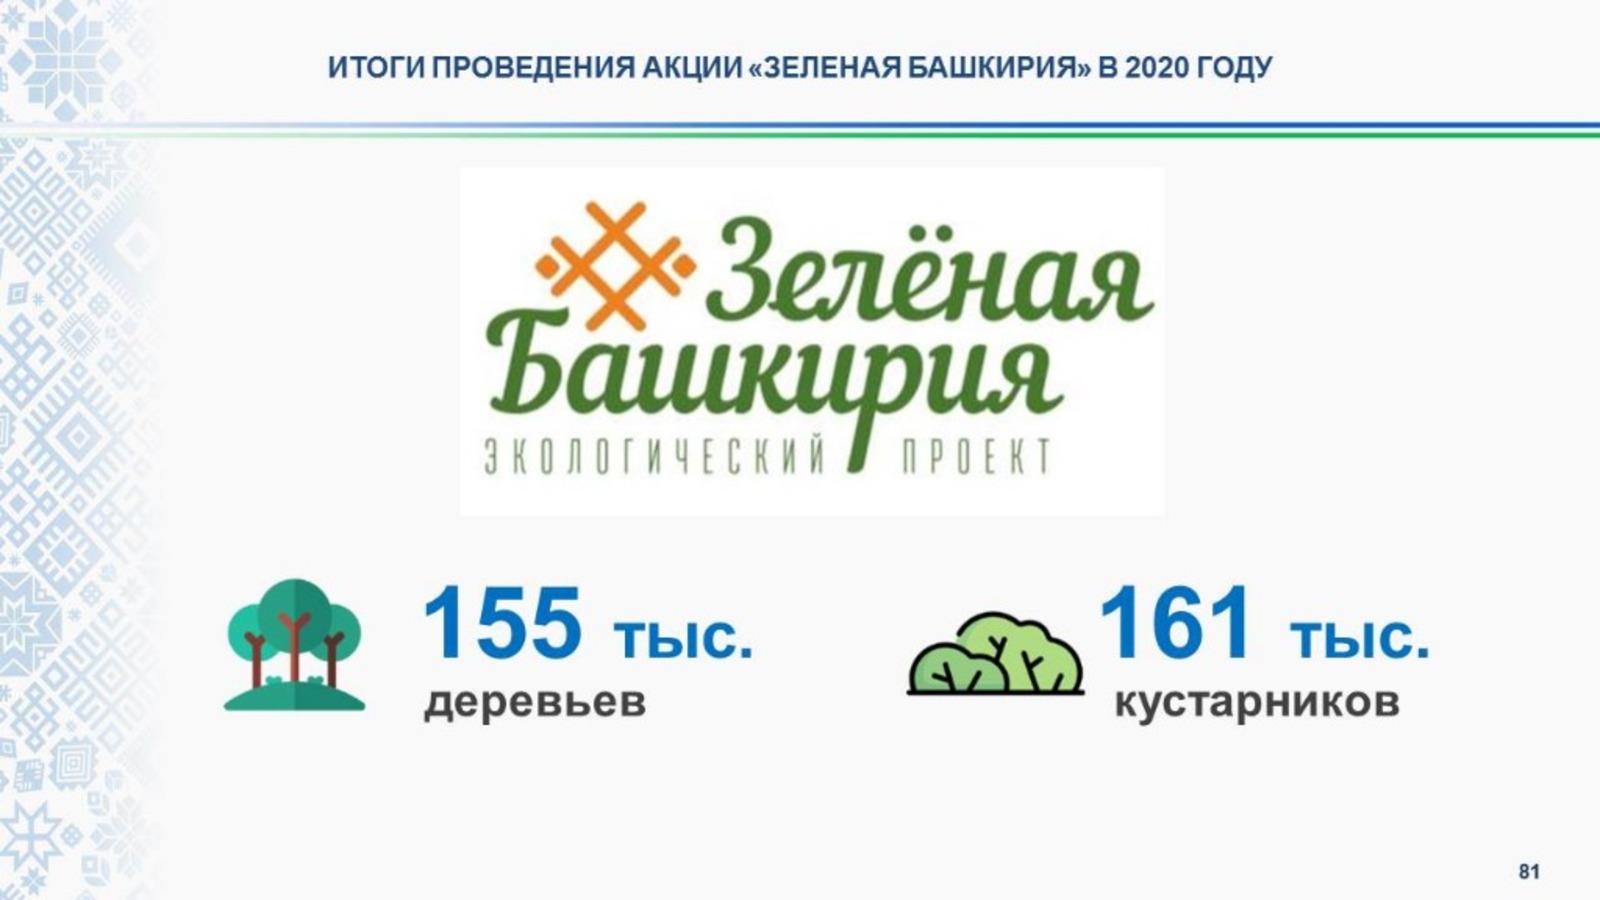 300 тысяч деревьев и кустарников в рамках акции «Зелёная Башкирия»